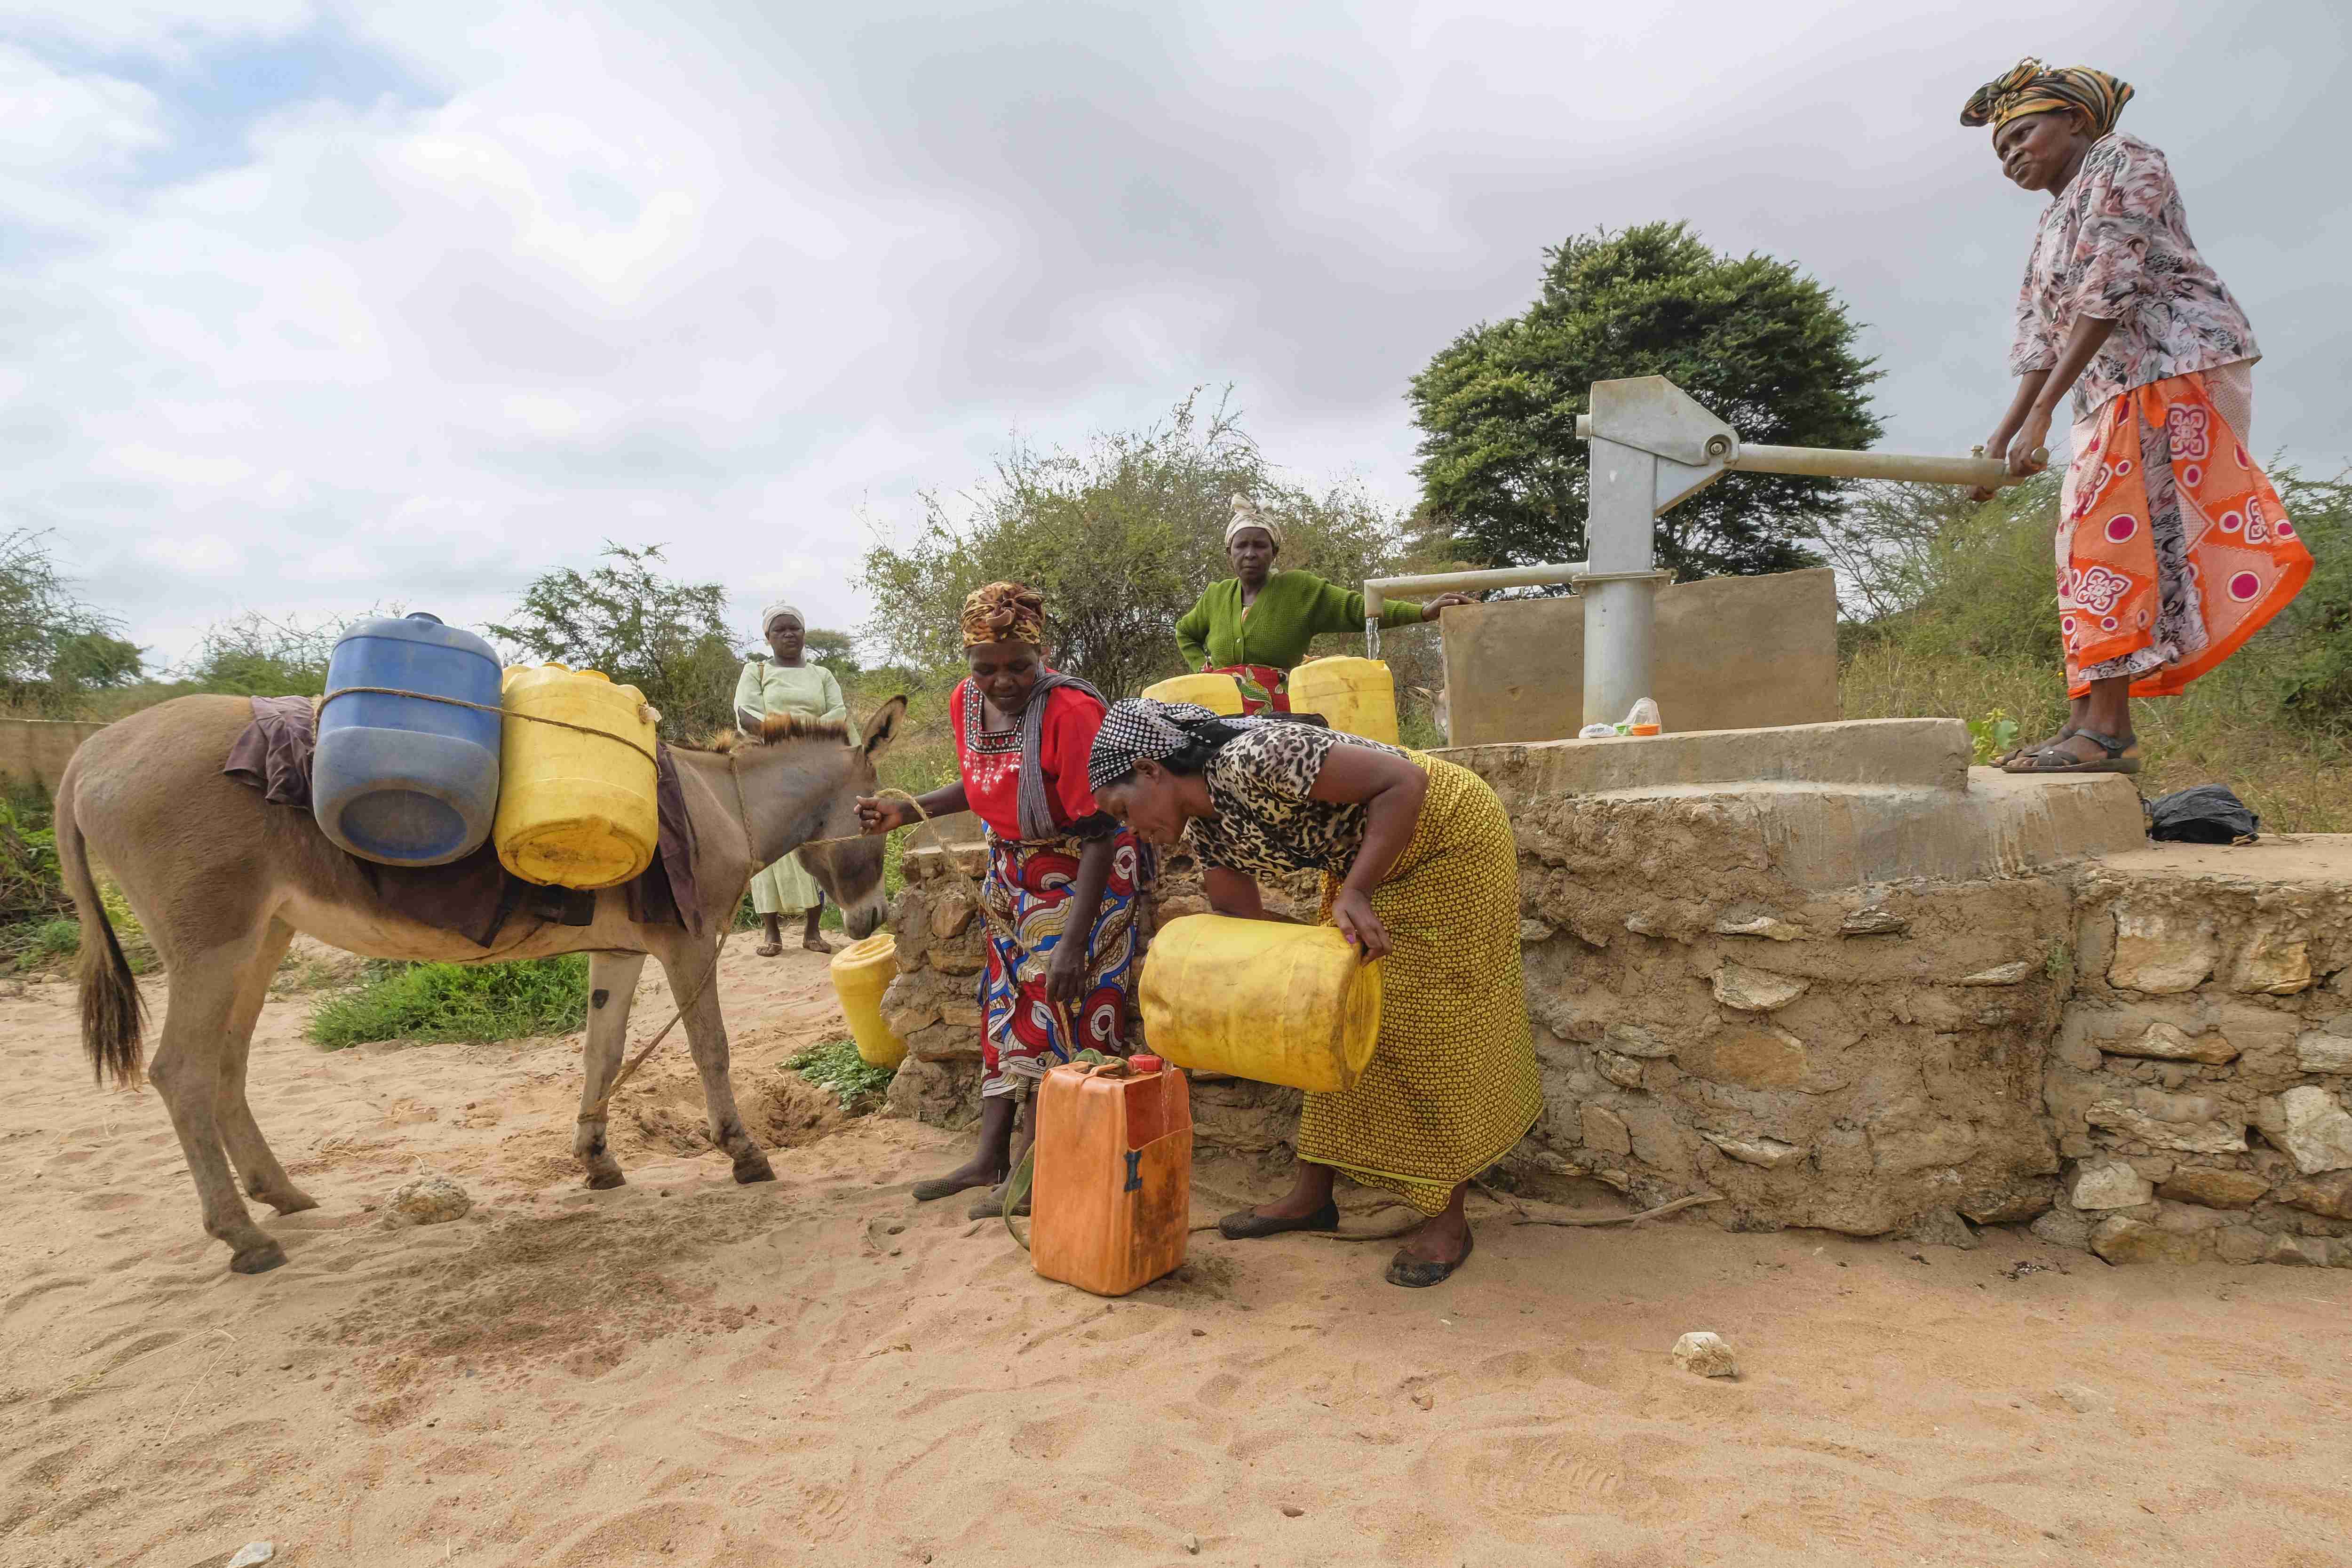 Szene am Brunnen mit Handpumpe. Eine Frau am Schwengel, weitere Frauen füllen Wasser aus Kanistern um. Ein Esel steht dabei, mit Kanistern beladen.